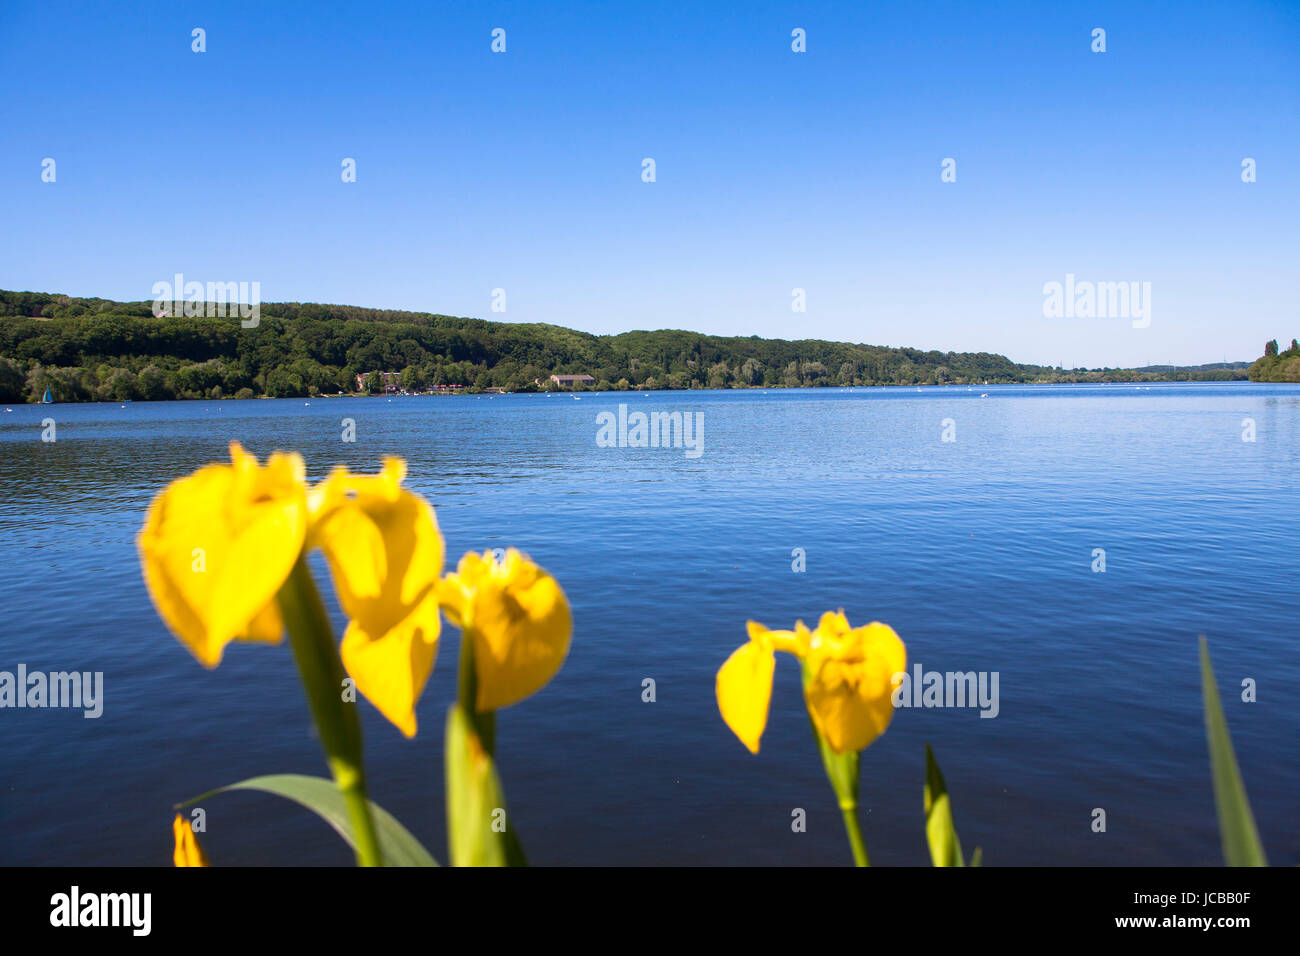 In Germania, in Renania settentrionale-Vestfalia, la zona della Ruhr, Bochum, lago Kemnade, lago di storage, bandiera dell'acqua. Foto Stock